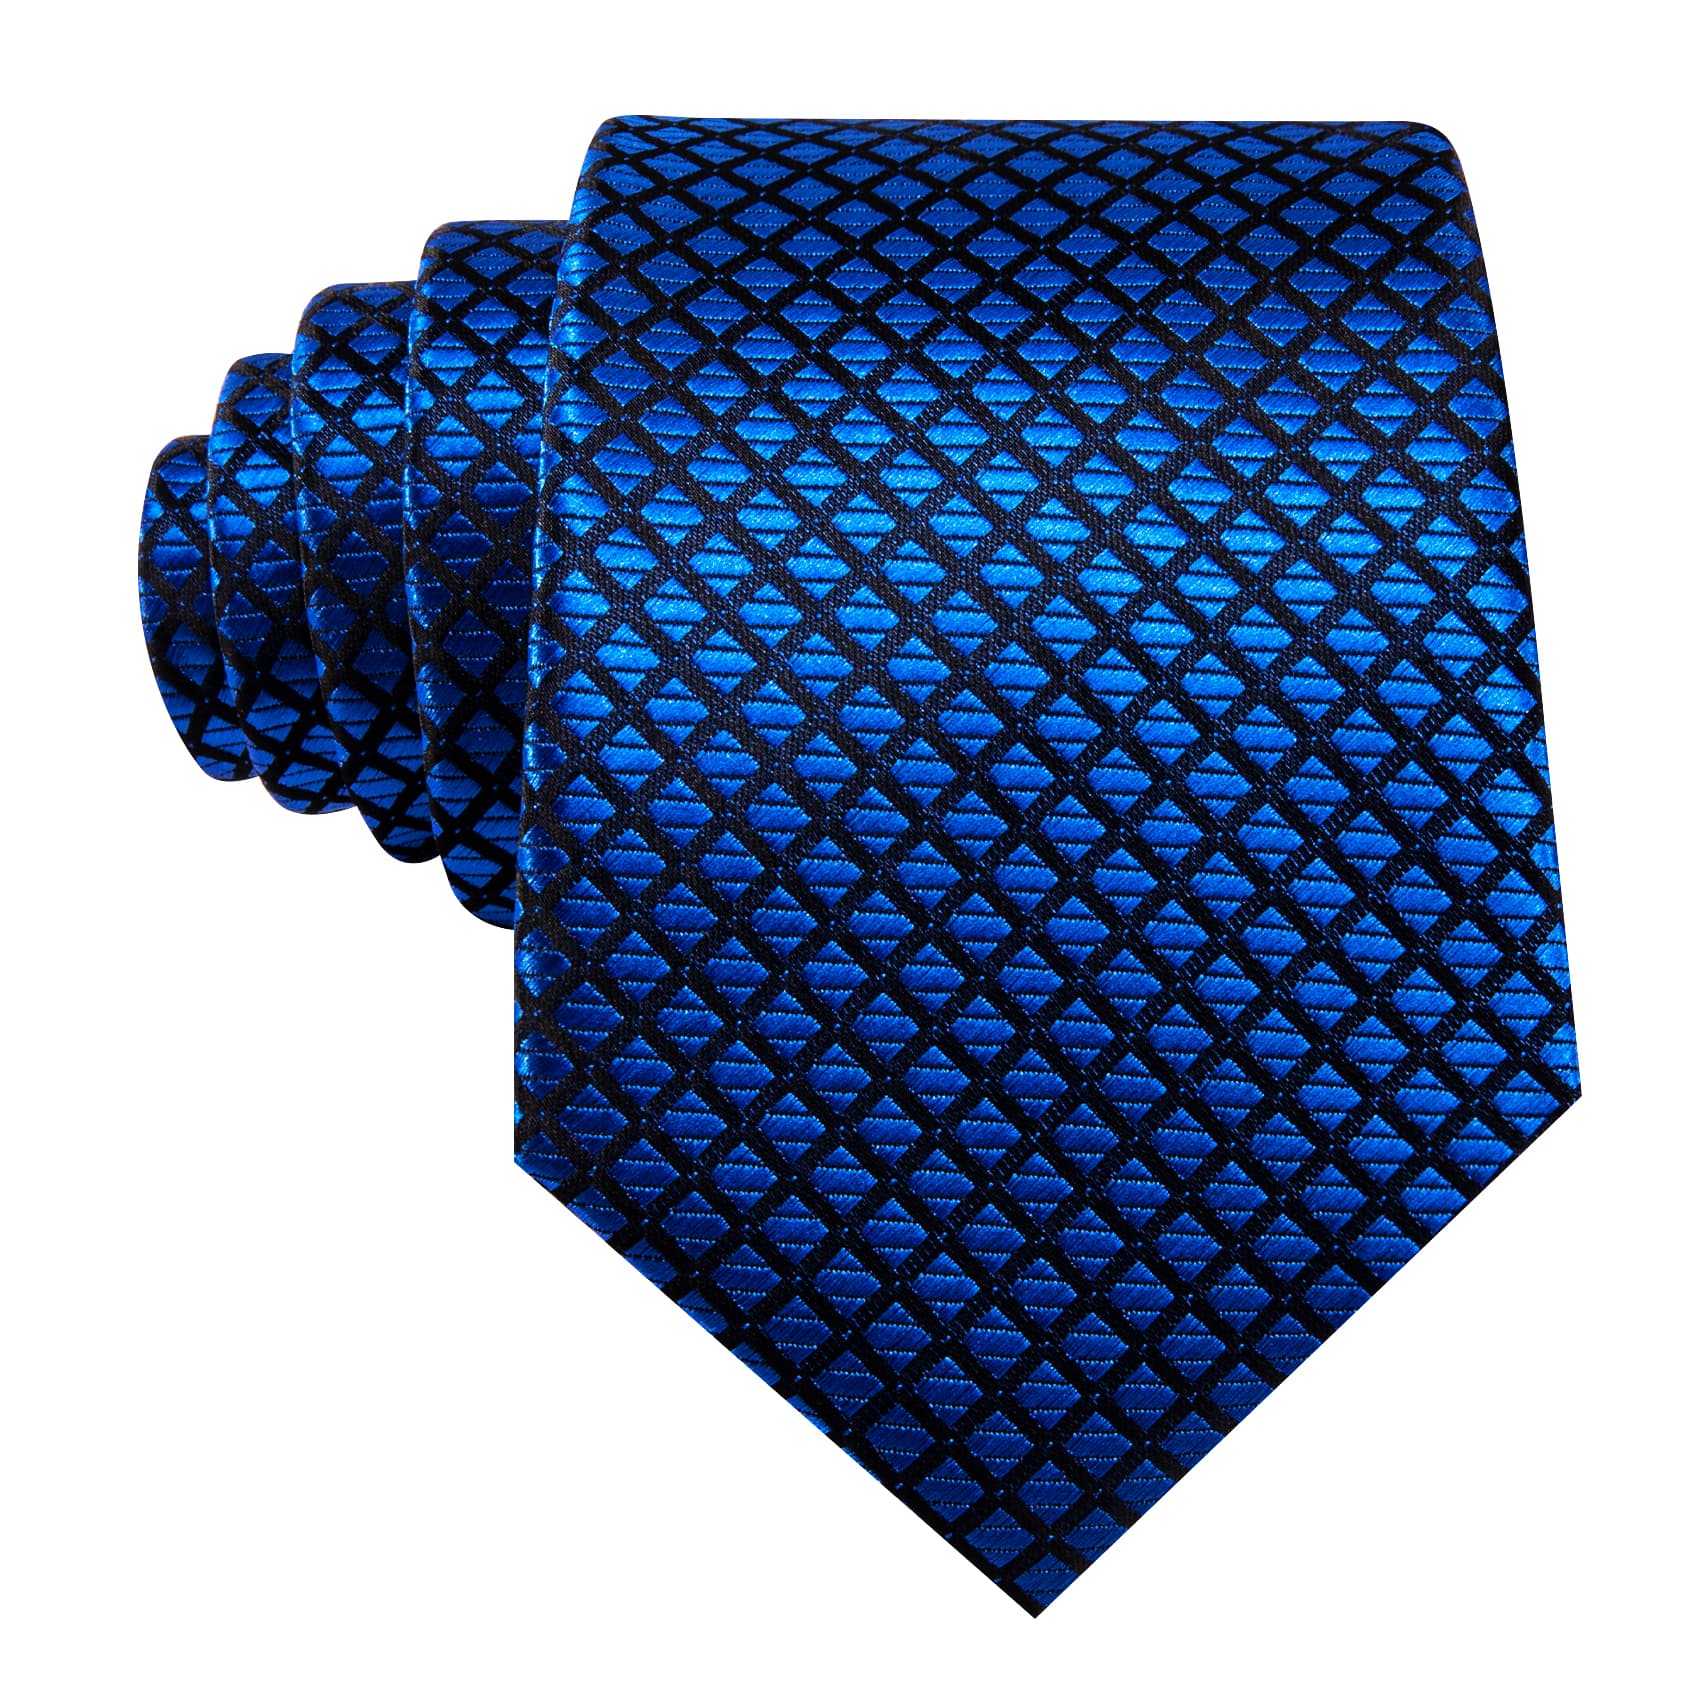  Plaid Tie Blue Black Checkered Necktie and Cufflink Set